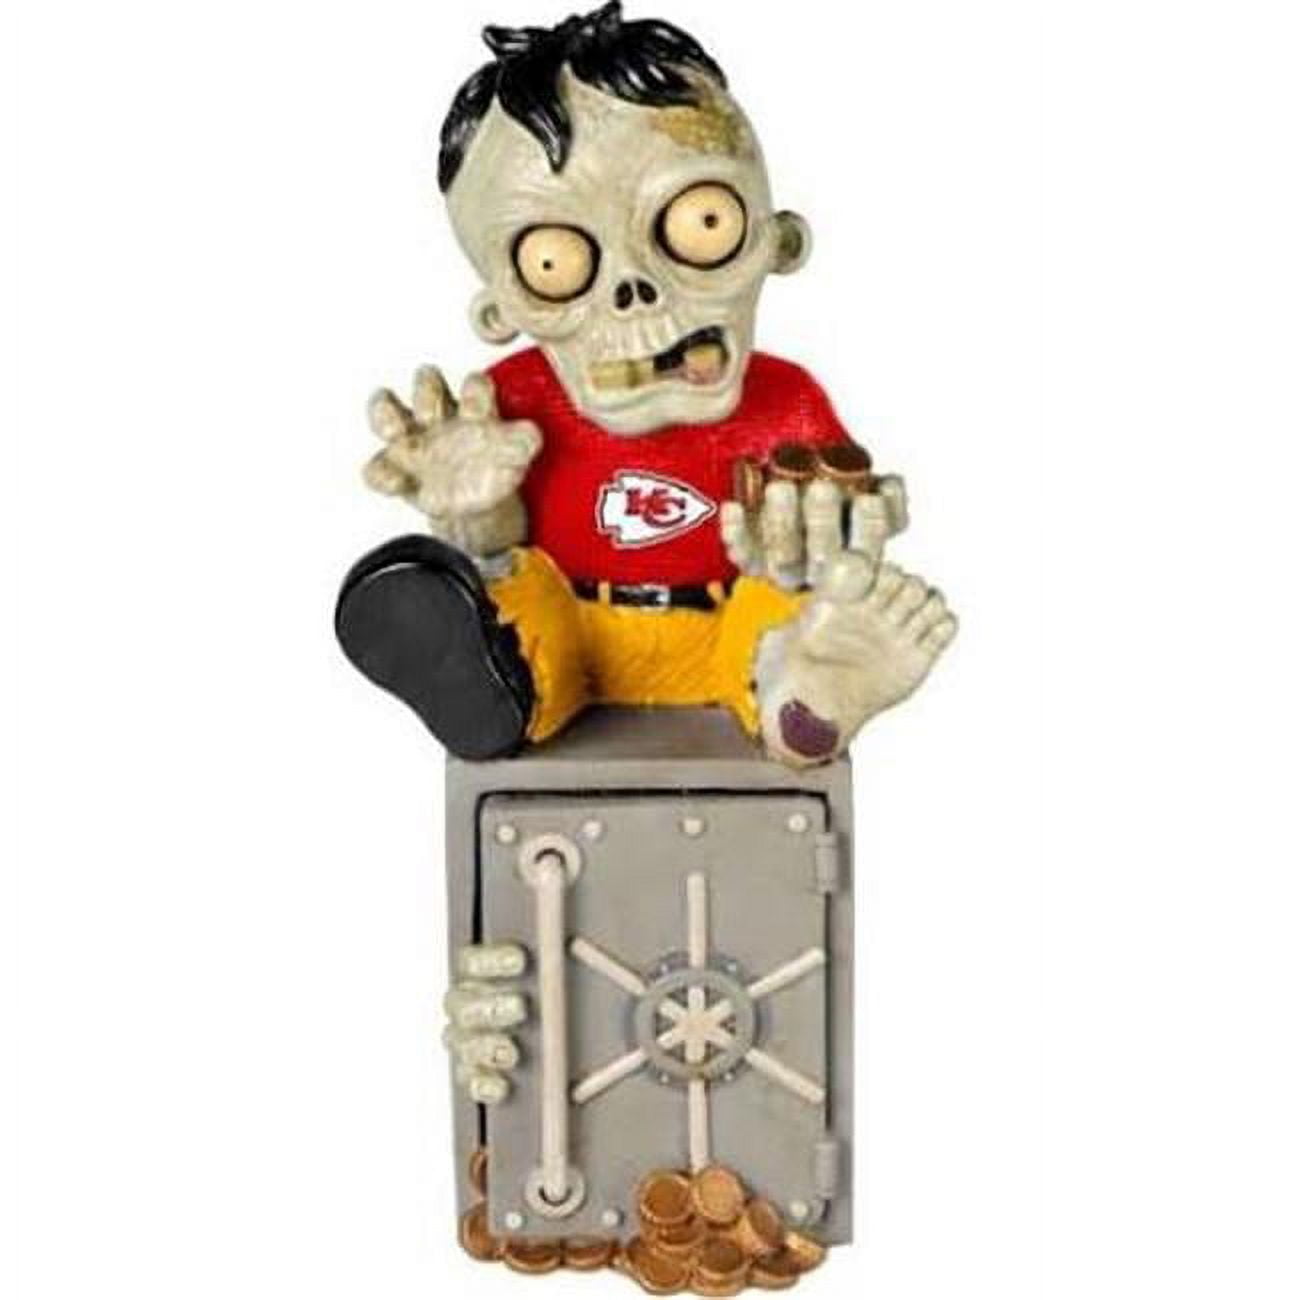 Sporting Kansas City Zombie Figurine